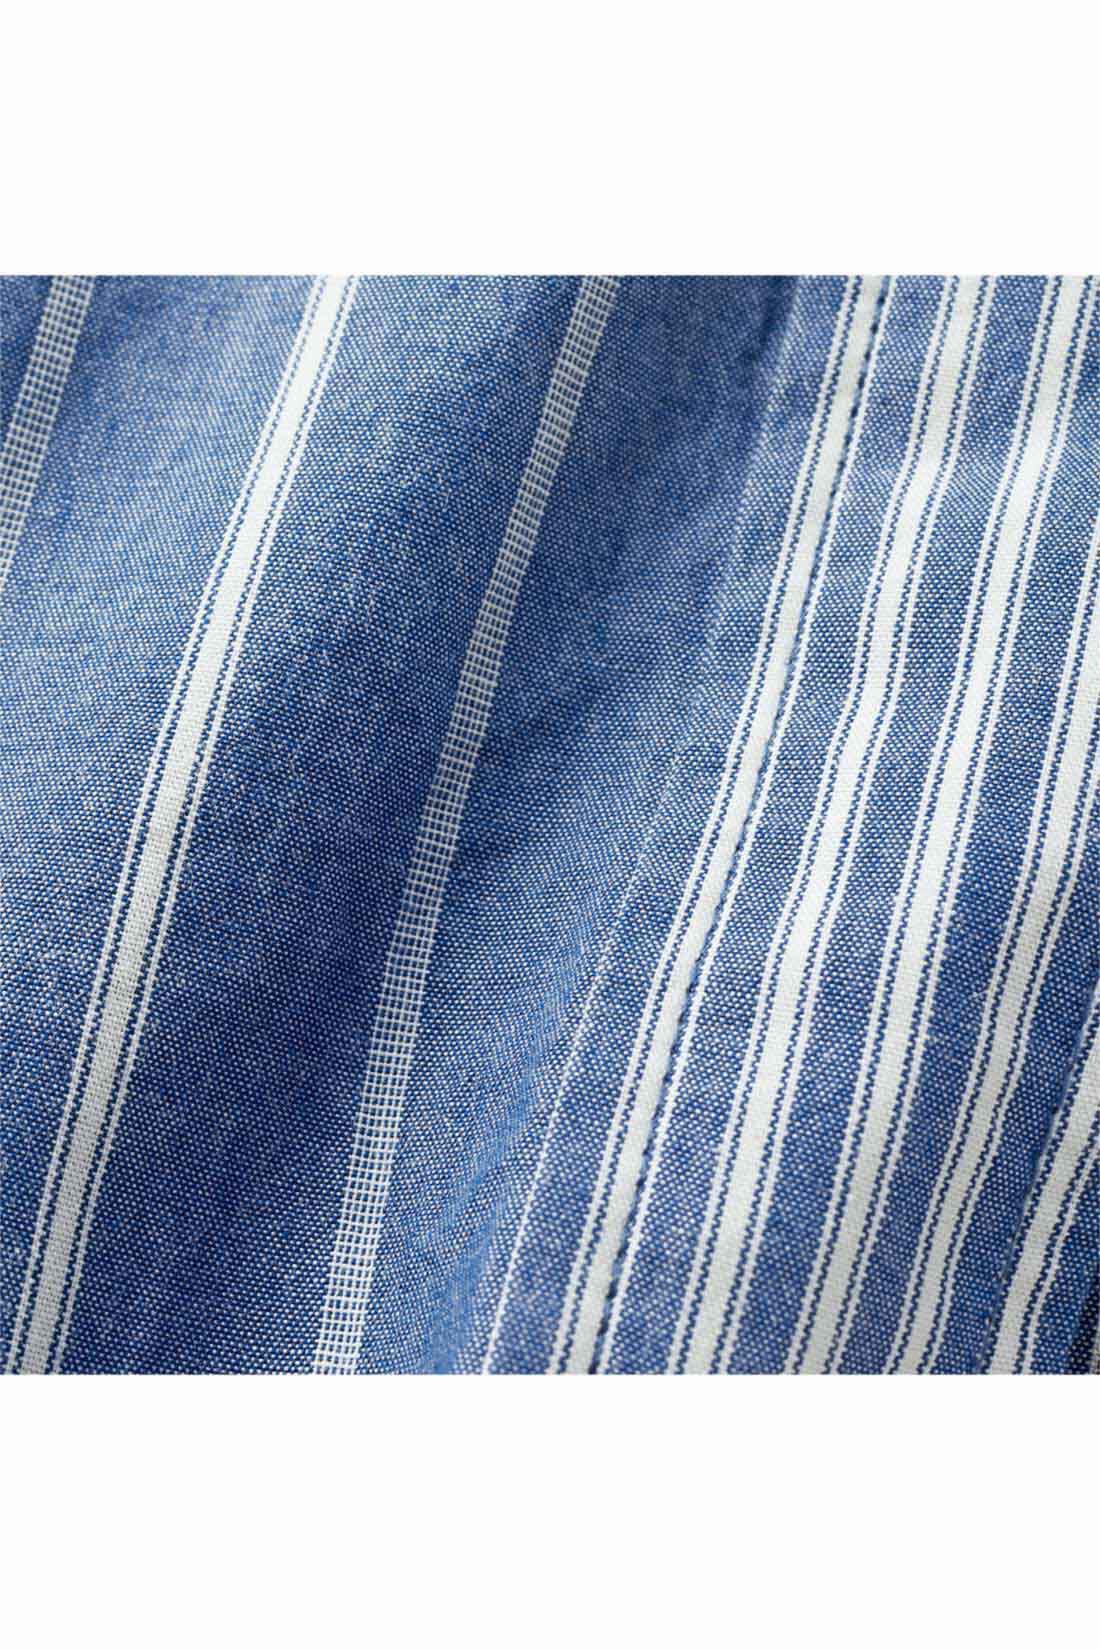 THREE FIFTY STANDARD|THREE FIFTY STANDARD ダブルストライプのシャツ〈ブルー〉|同色でピッチの幅が異なる2種類のストライプ柄。張りのあるコットン生地を使用。